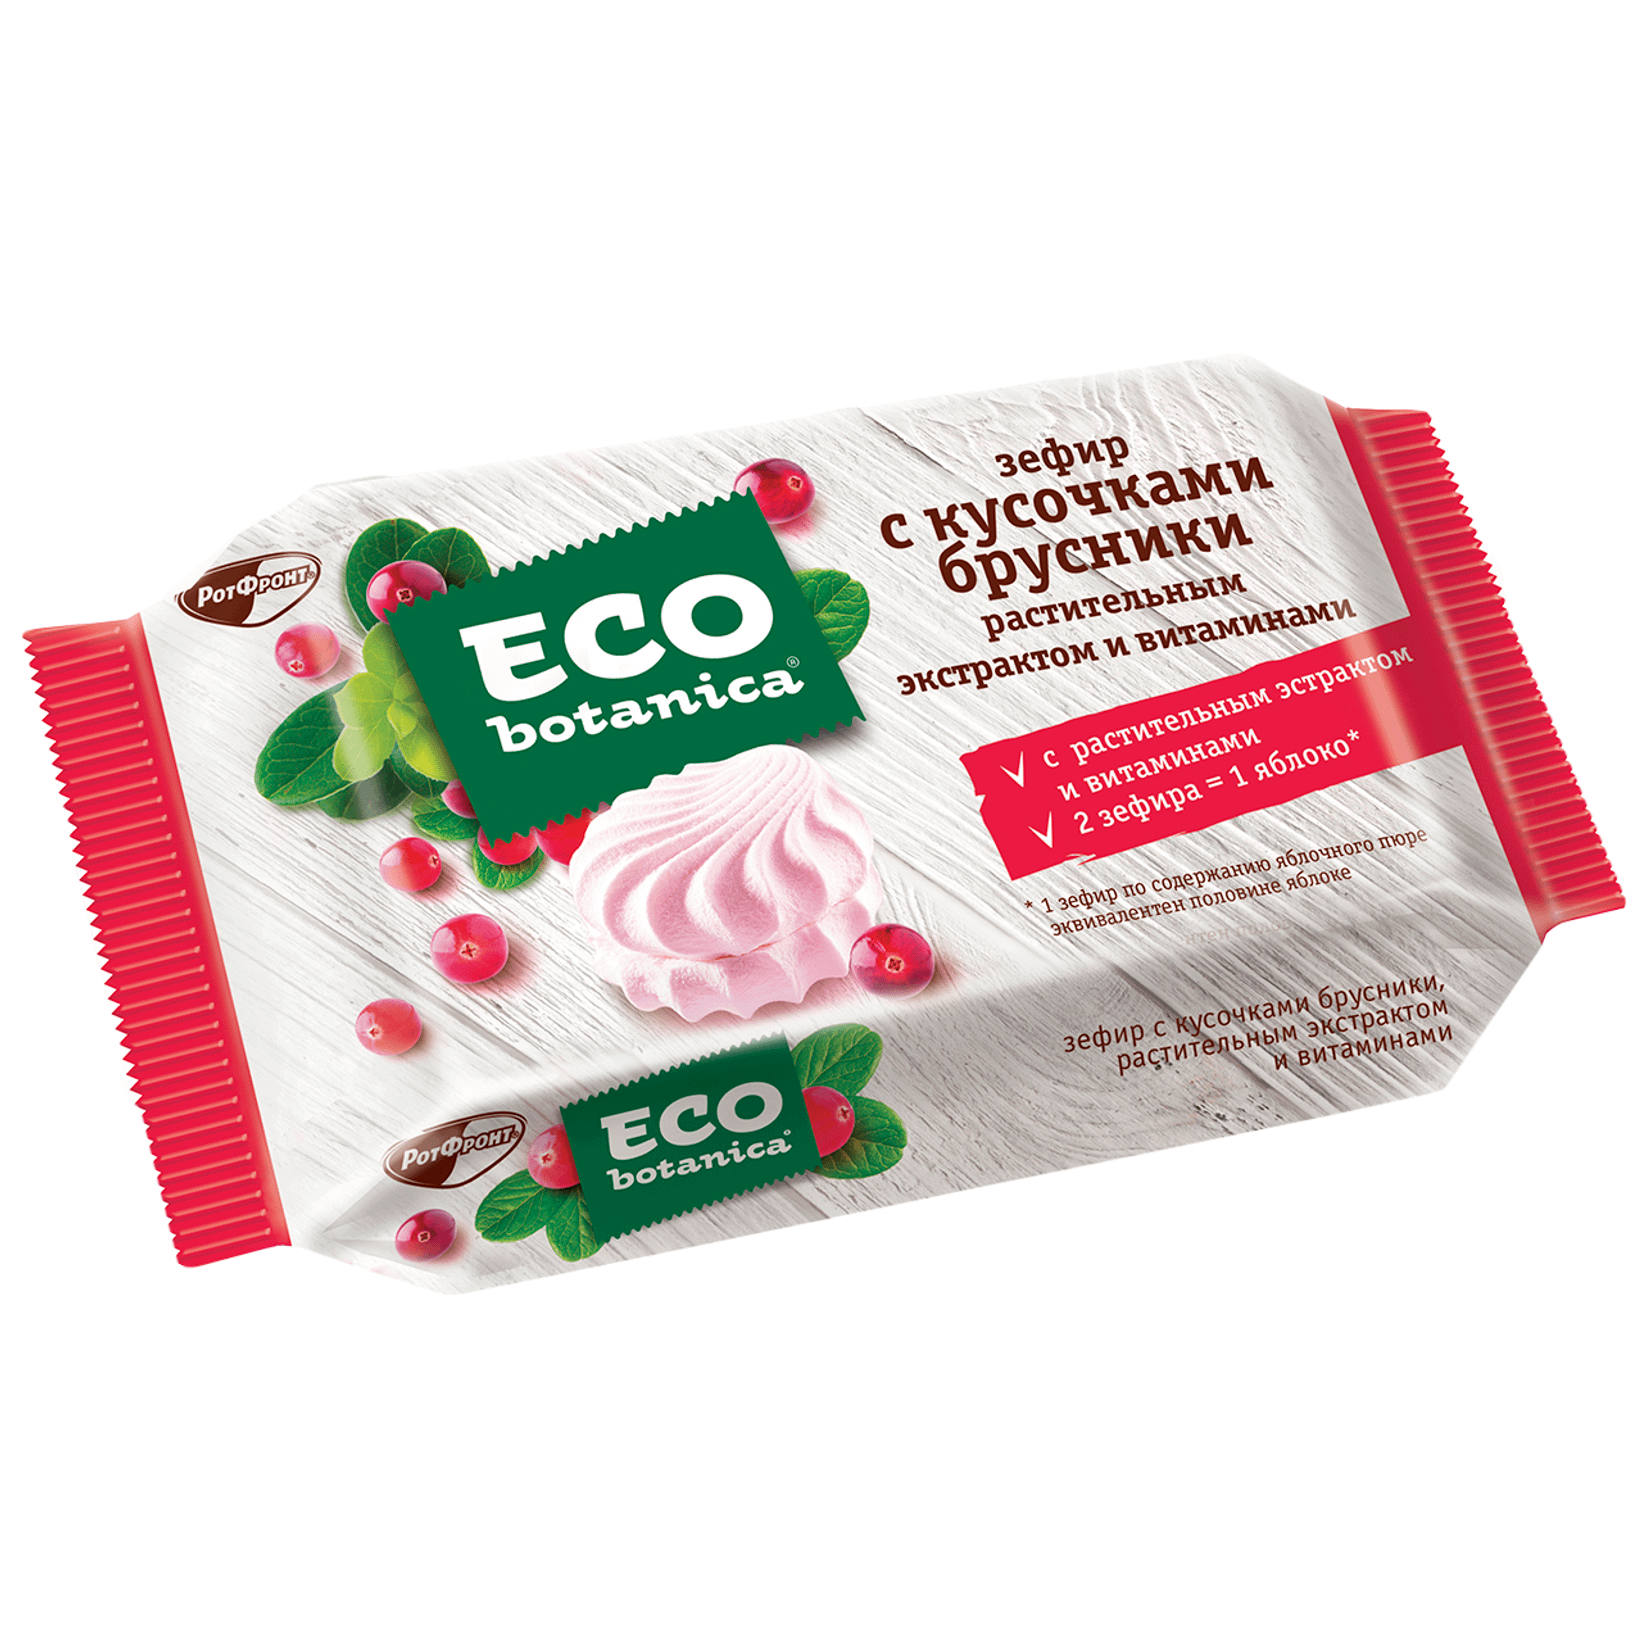 Eco botanica Зефир с кусочками брусники и витаминами, 250г